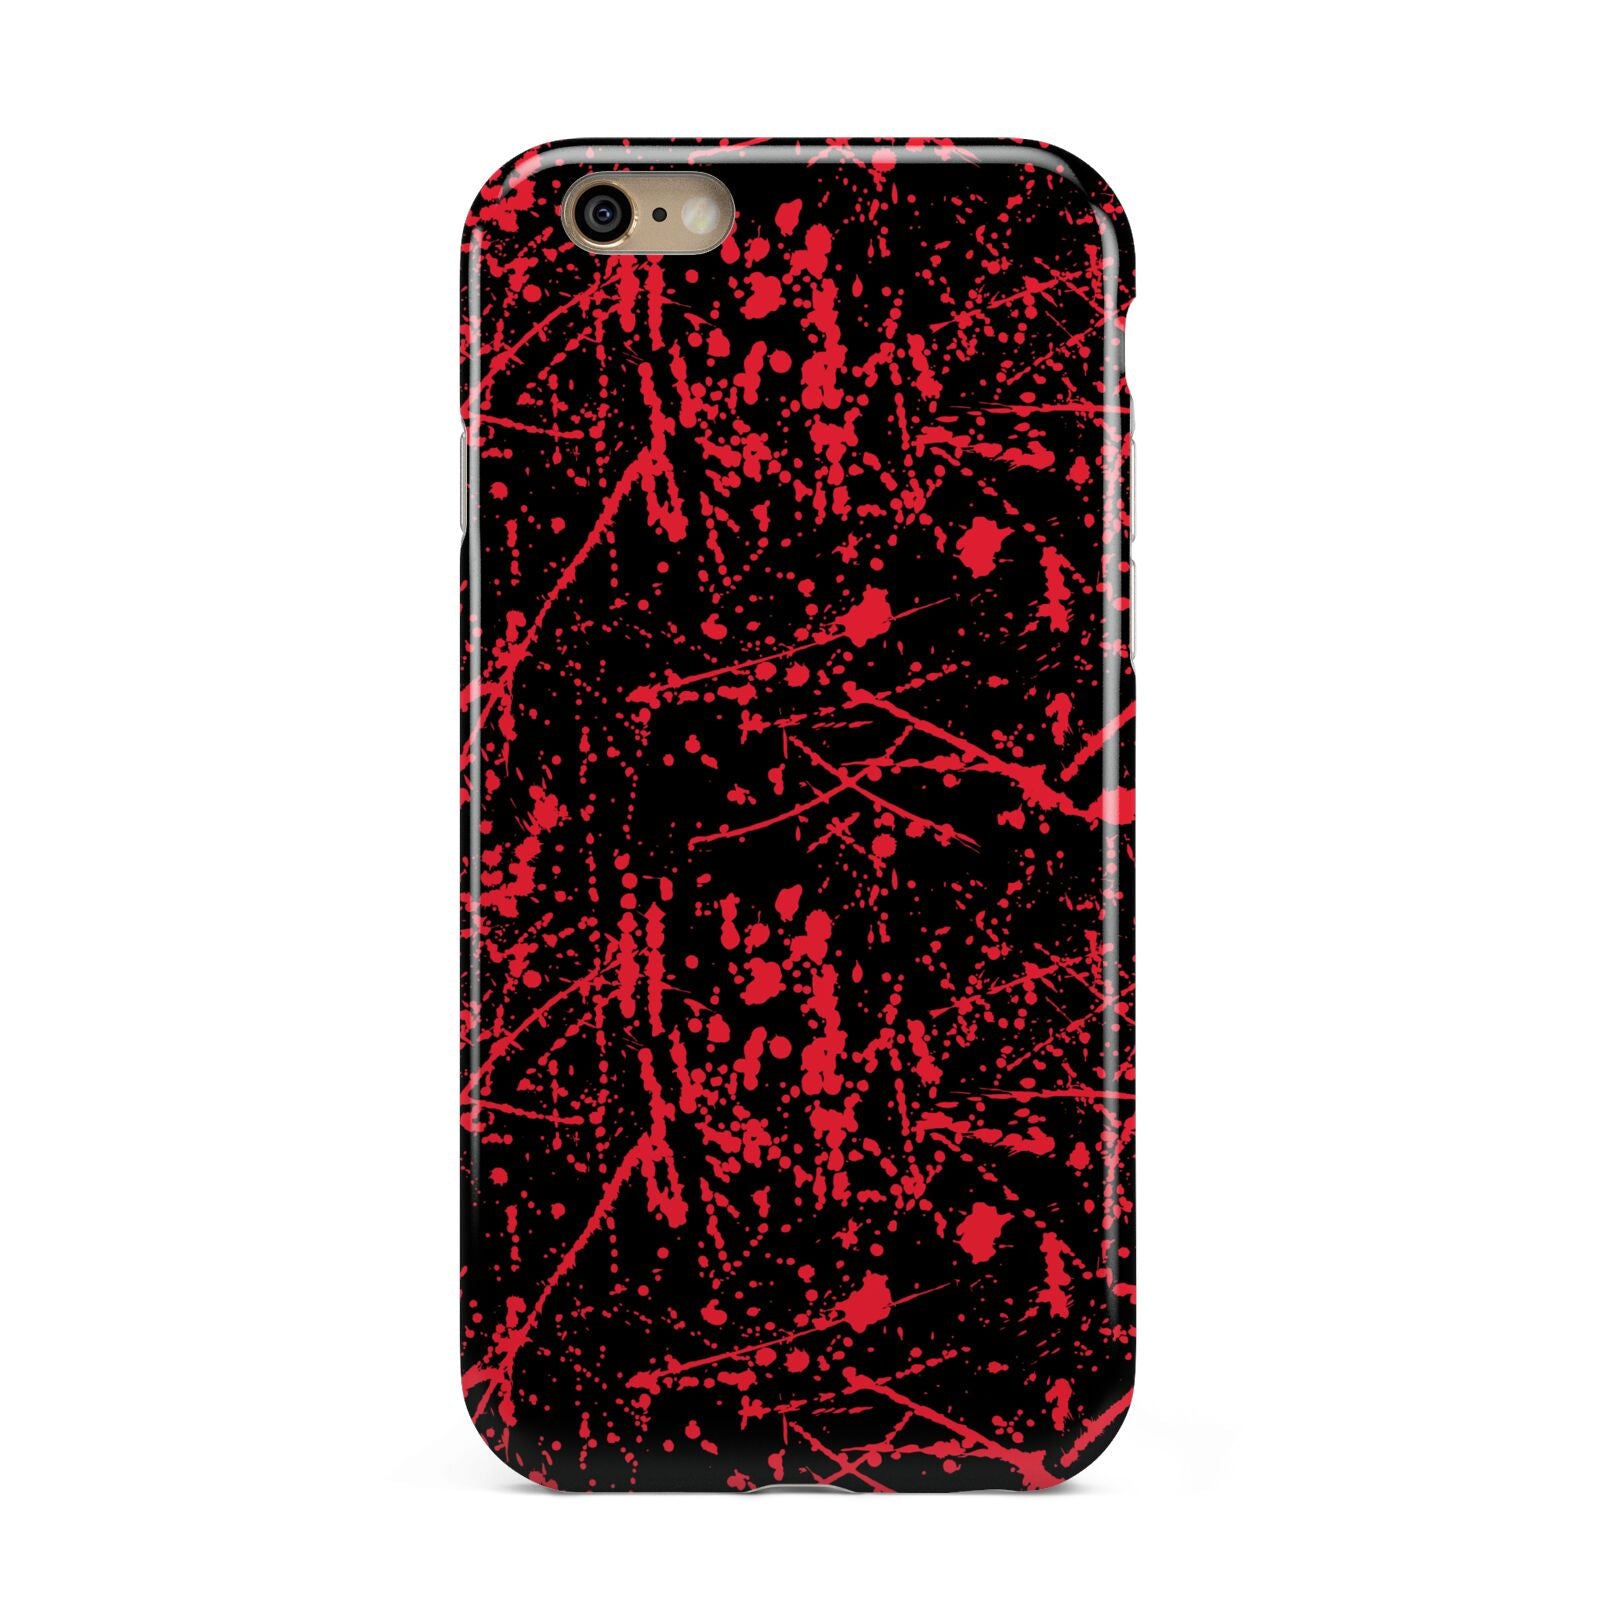 Blood Splatters Apple iPhone 6 3D Tough Case